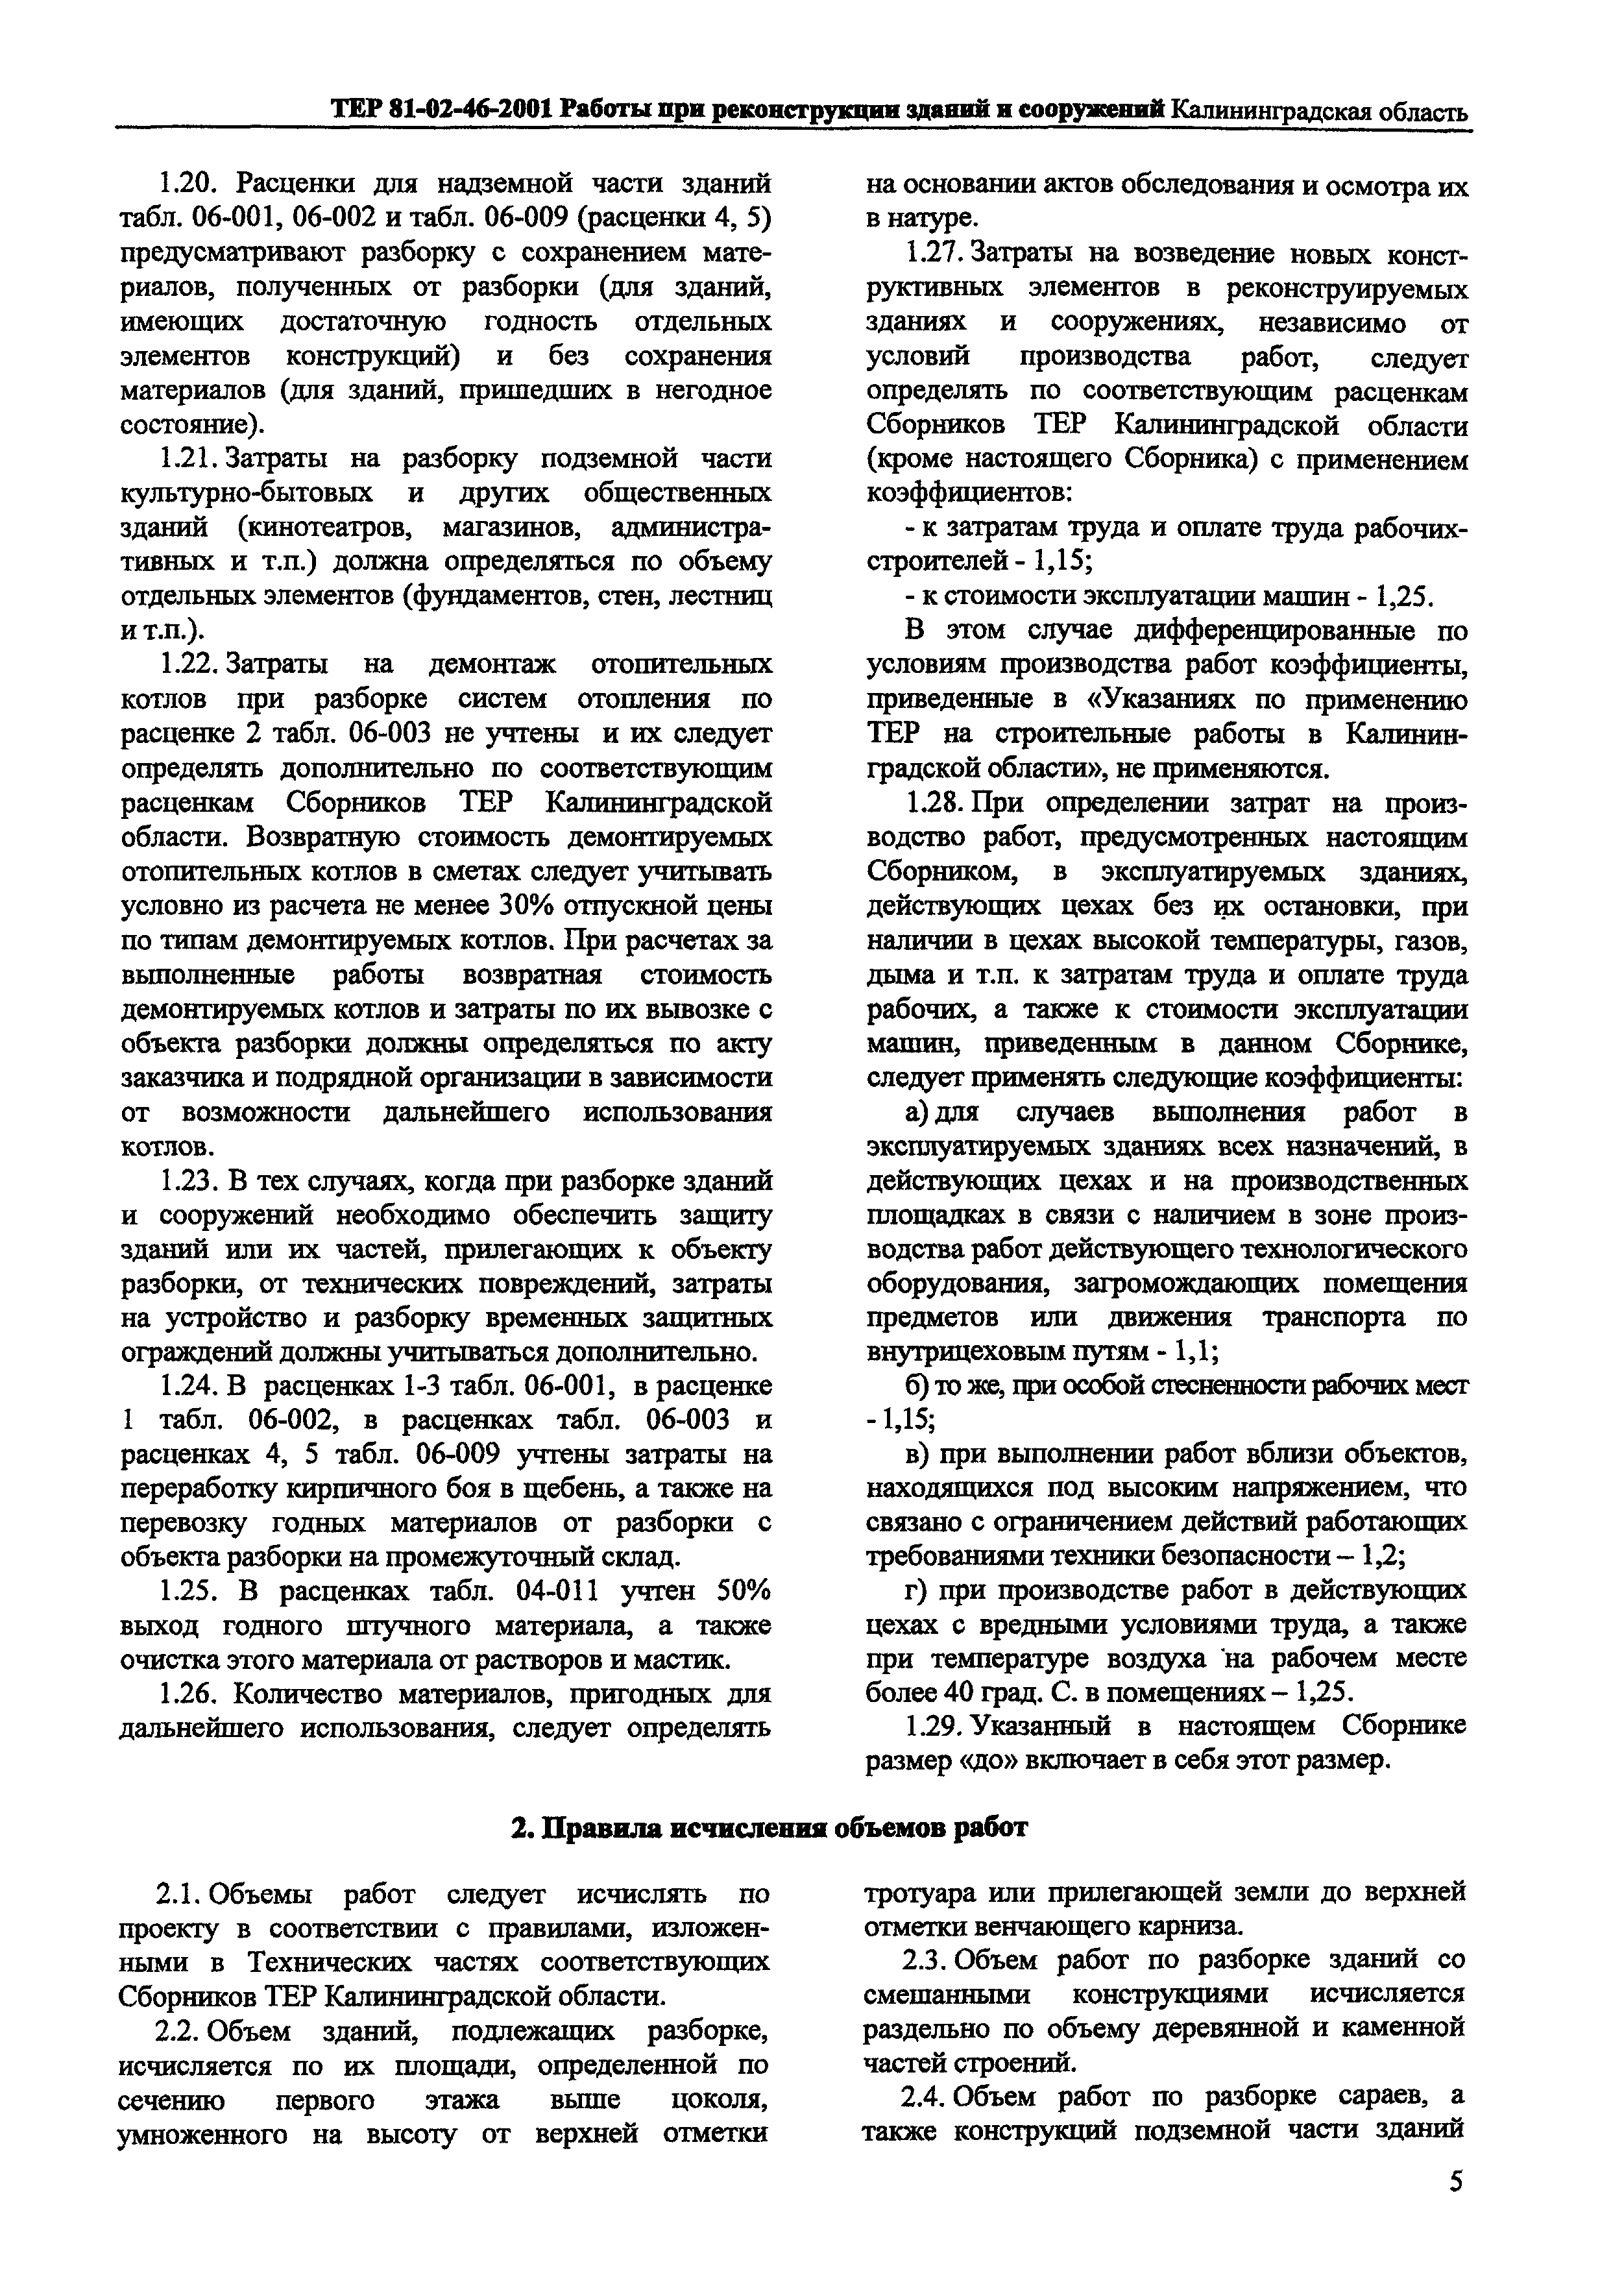 ТЕР Калининградской области 2001-46